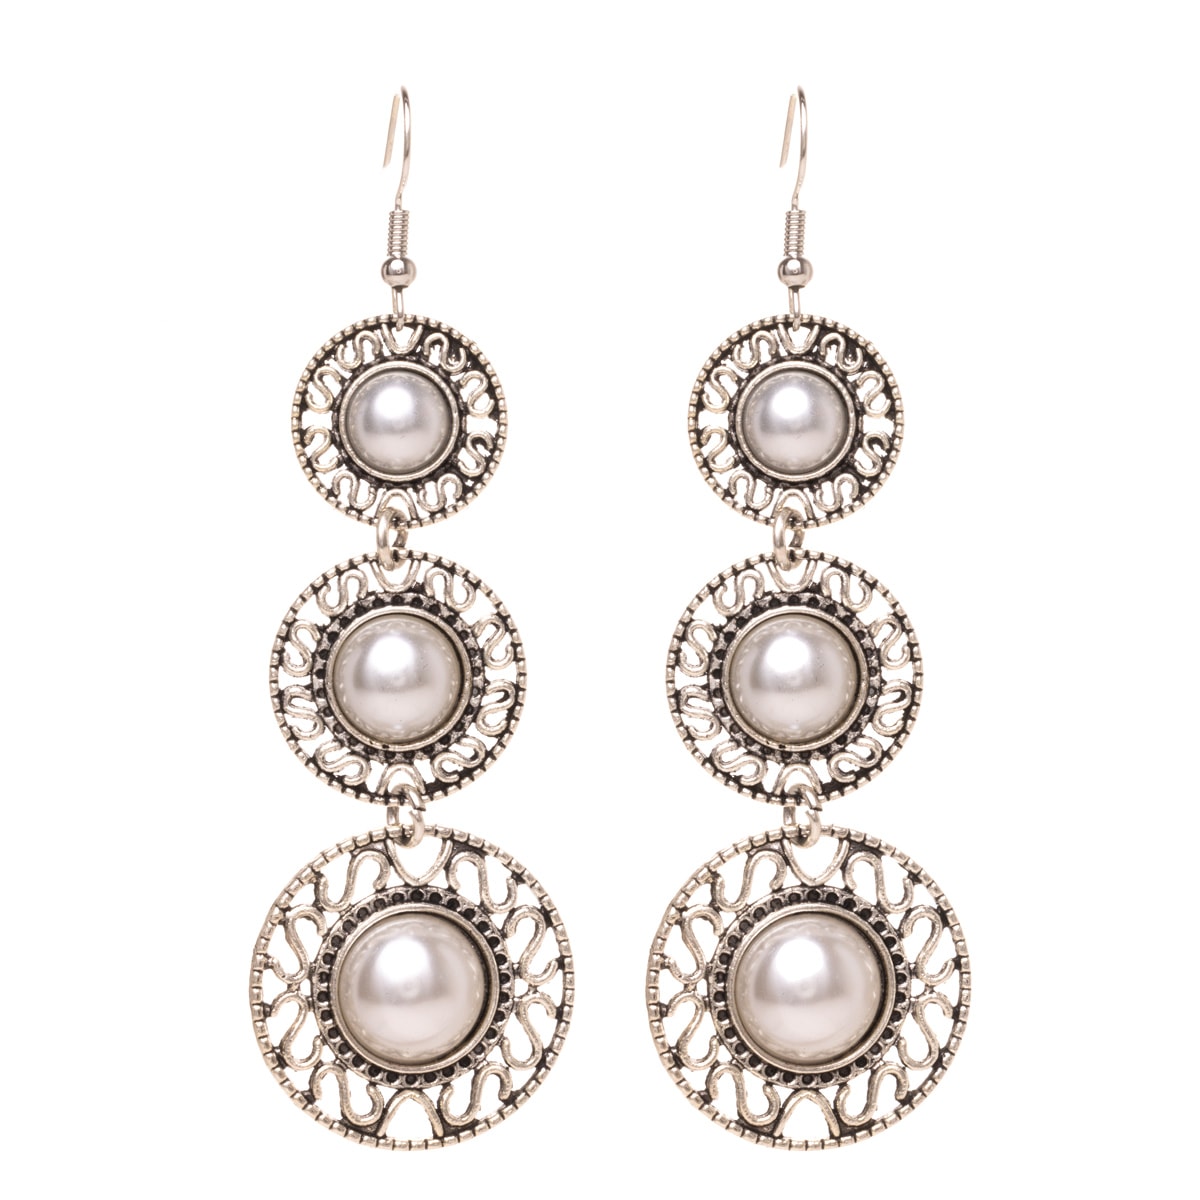 Three pearl rings dangling earrings